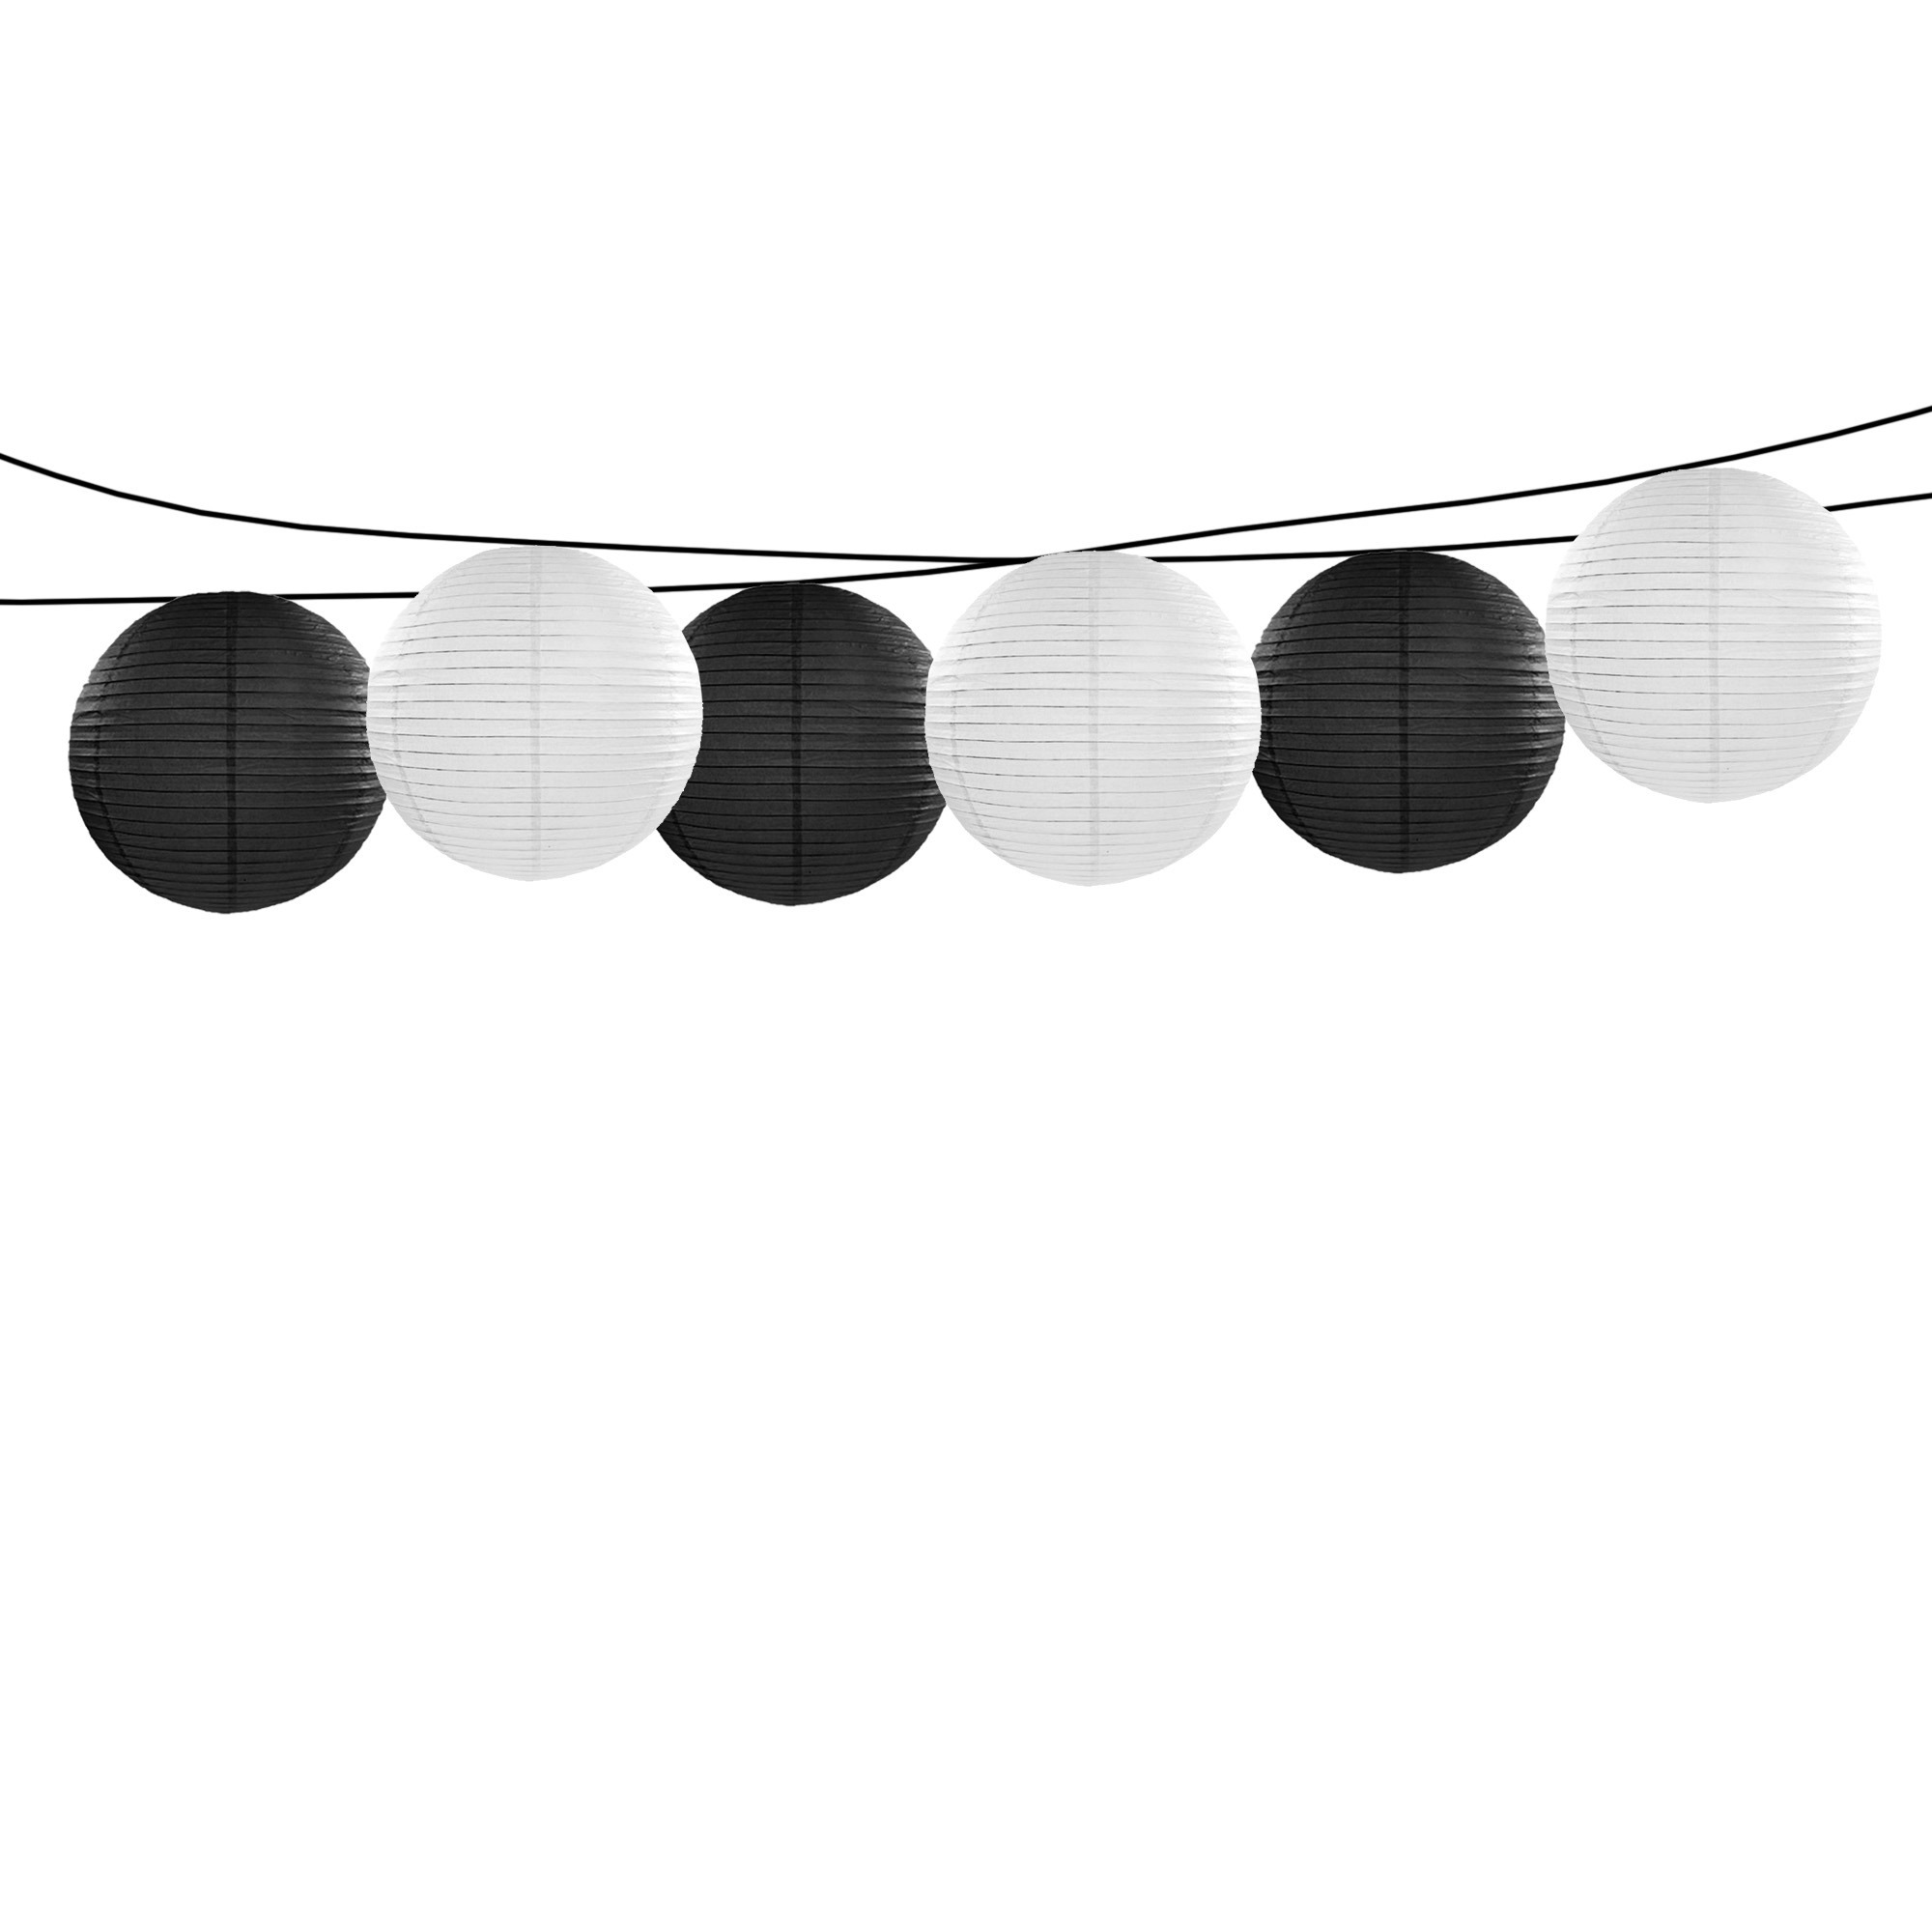 Feest-tuin versiering 6x stuks luxe bol-vorm lampionnen zwart en wit dia 35 cm